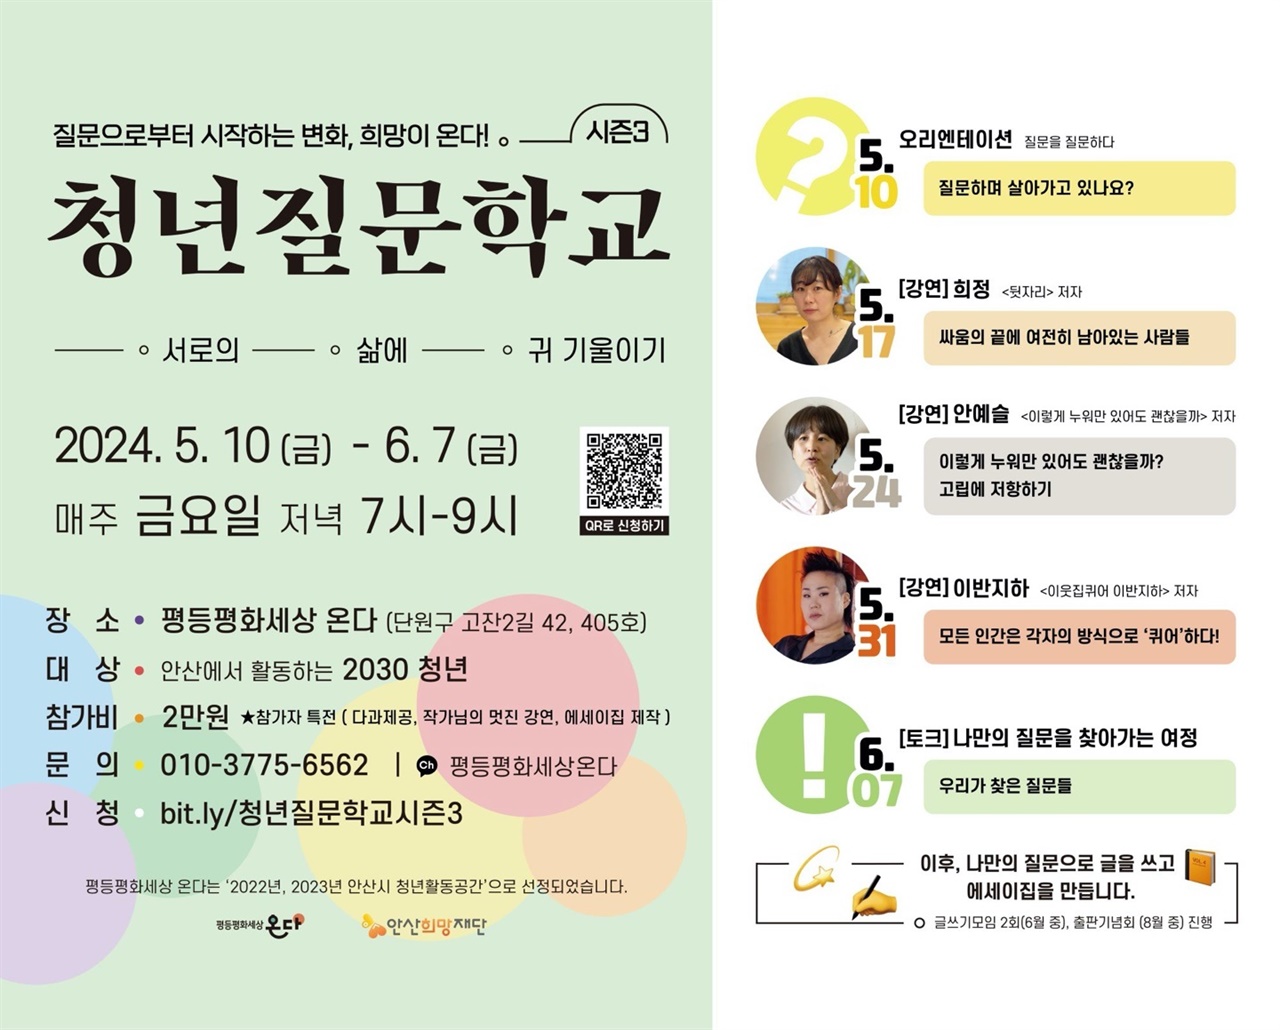 <청년질문학교 시즌3> 홍보 포스터